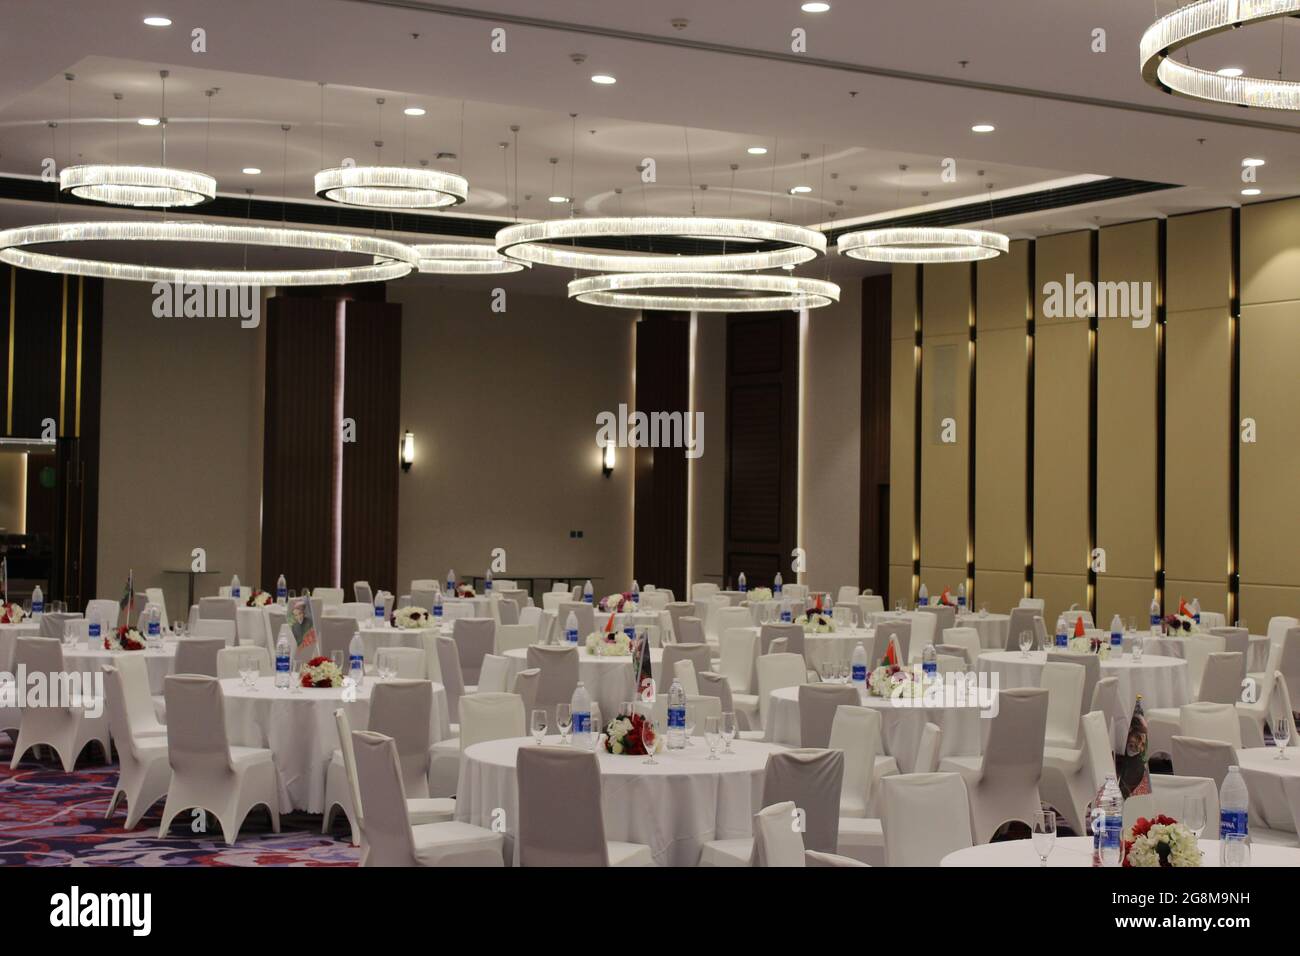 Fraser suites Hôtel cinq étoiles salle de banquet prêt à être célébré pour la Journée nationale d'oman avec des intérieurs magnifiques Banque D'Images